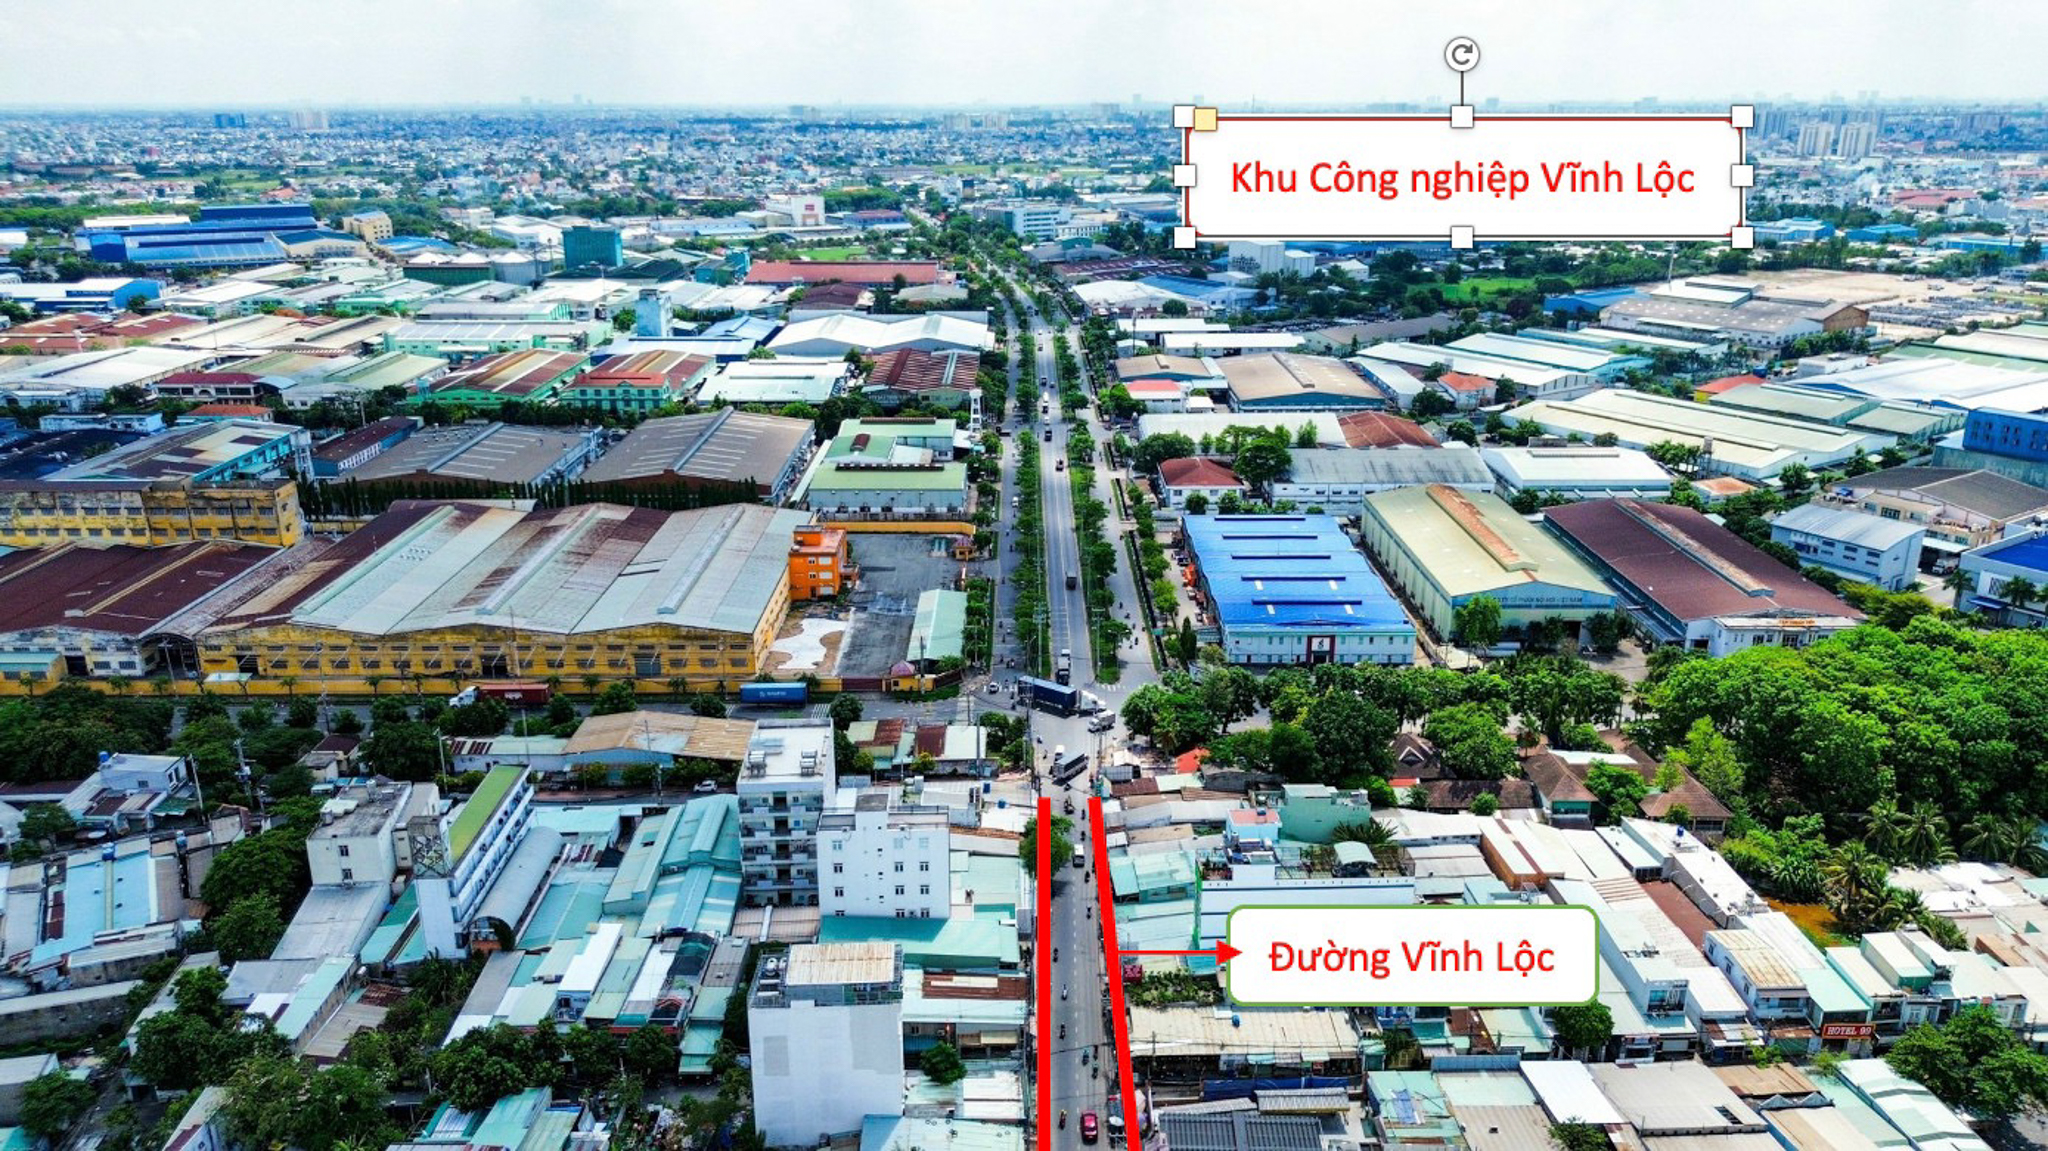 Con đường huyết mạch ở huyện đông dân nhất Việt Nam có thể được đầu tư 5.200 tỷ để mở rộng- Ảnh 3.